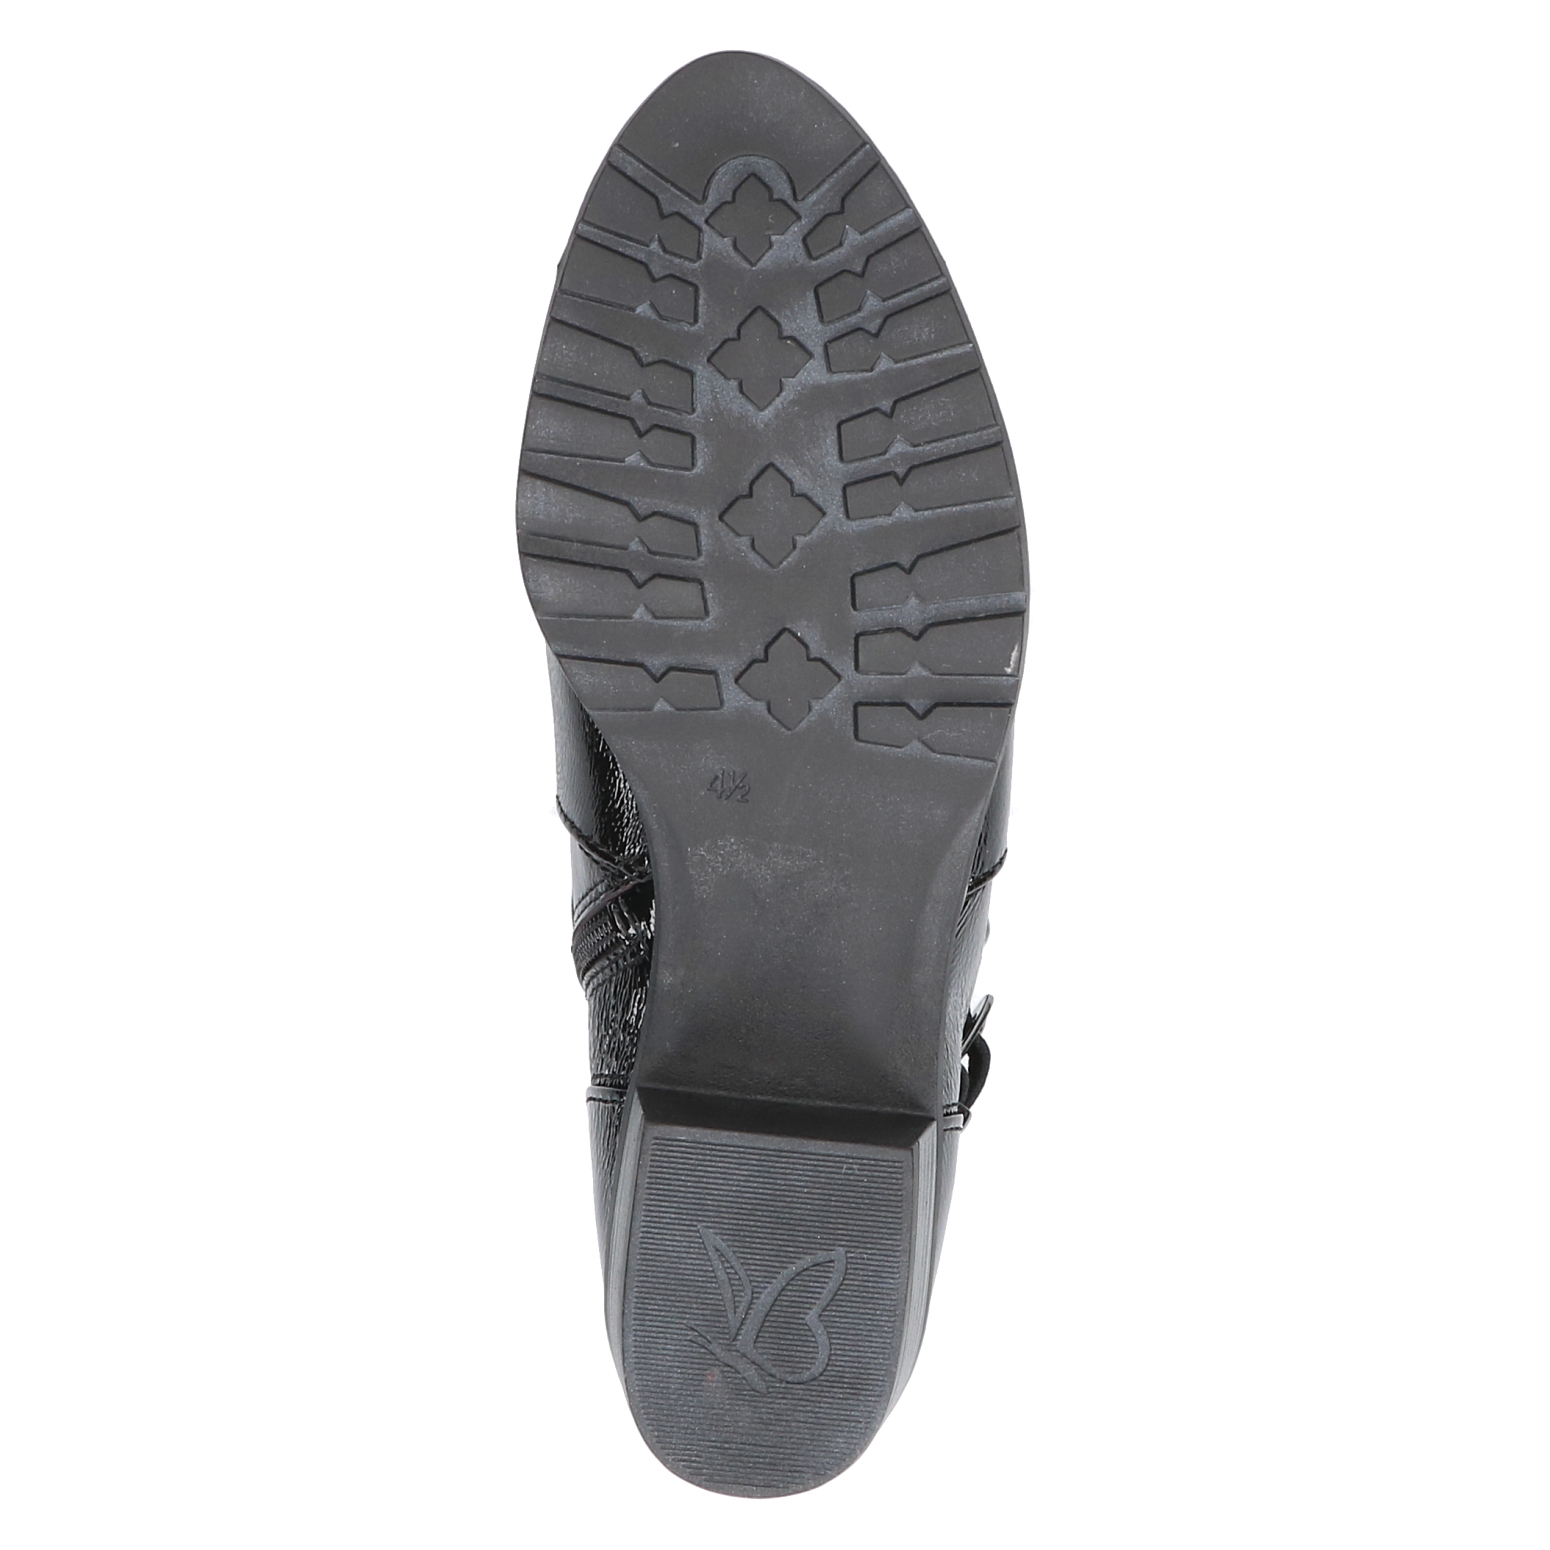 Caprice Ankle Boots - Schwarz Lackleder